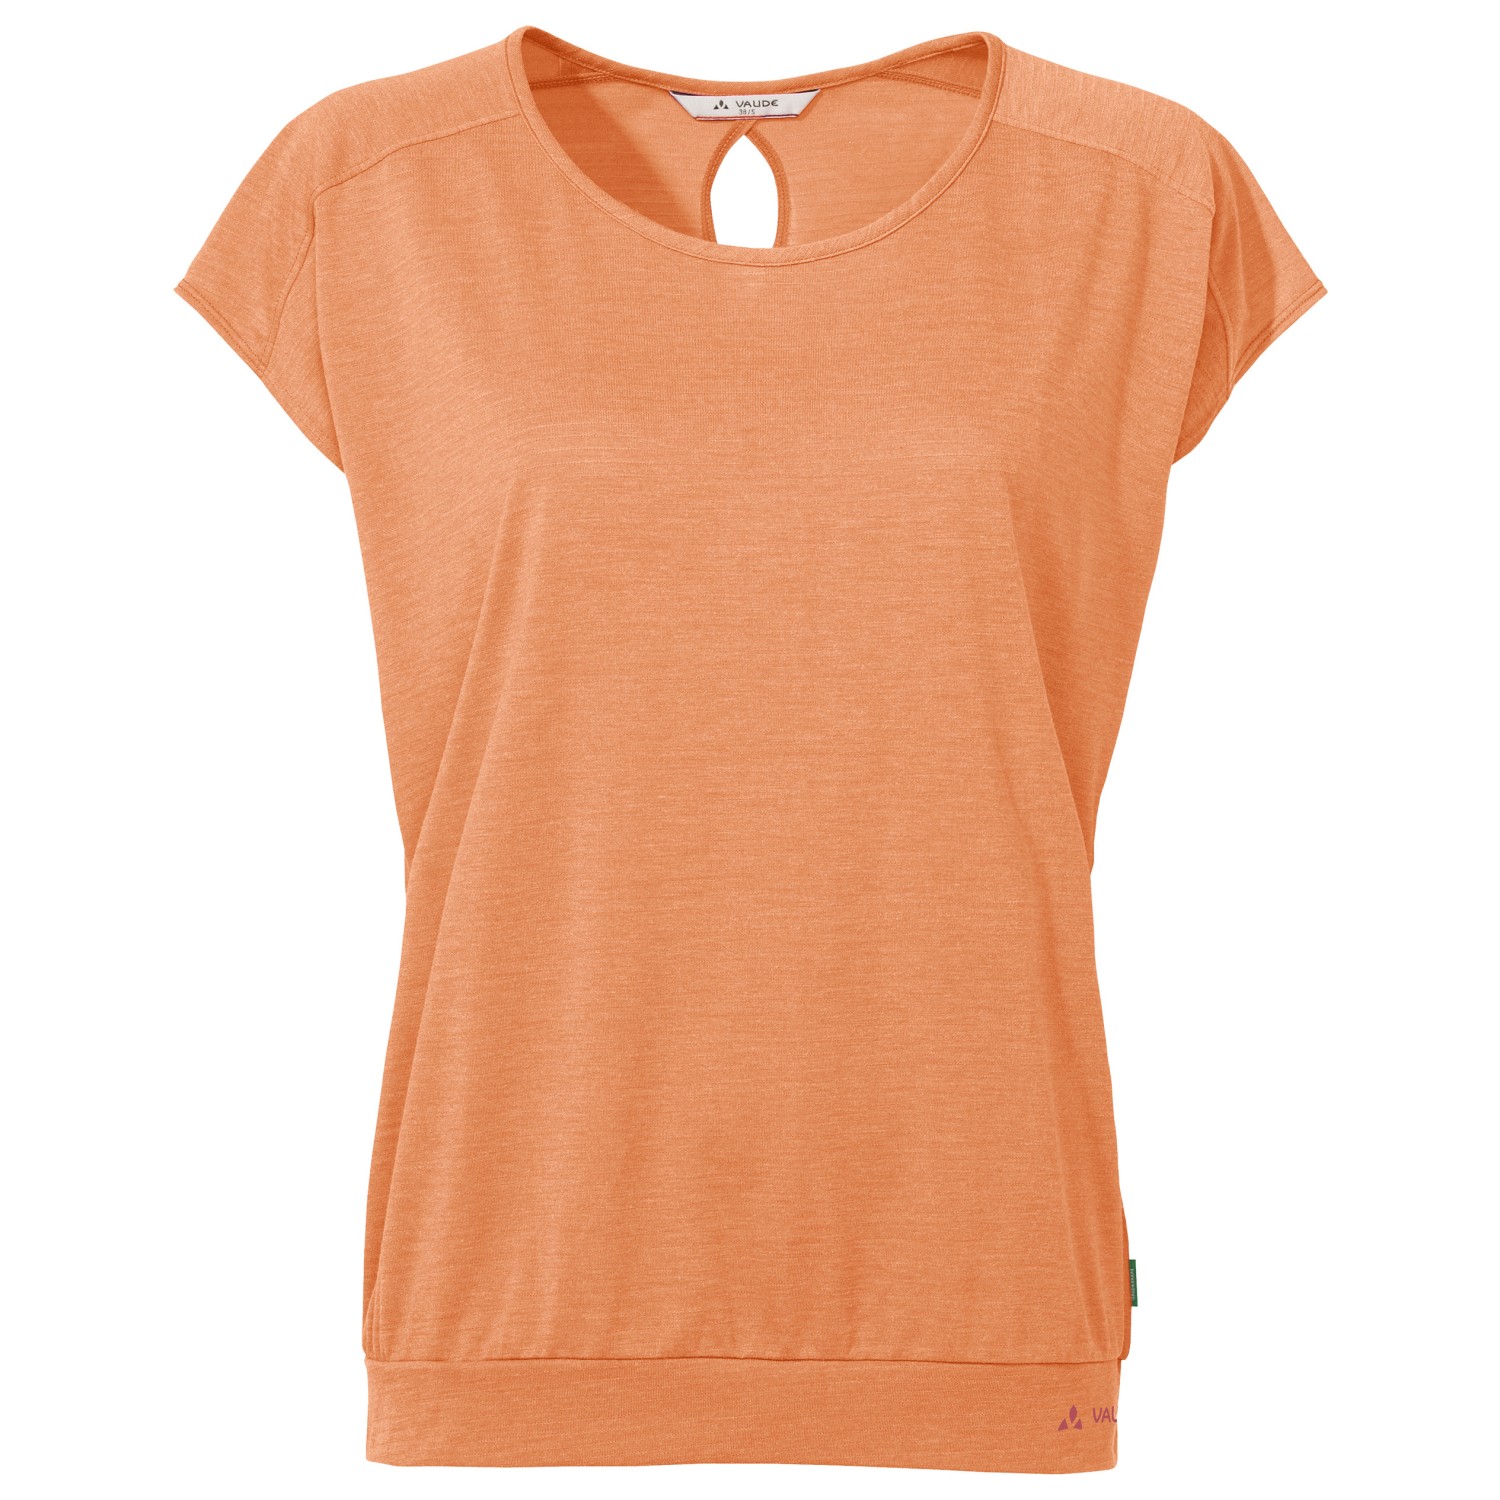 Функциональная рубашка Vaude Women's Skomer T Shirt III, цвет Sweet Orange функциональная рубашка vaude tekoa t shirt iii цвет nordic blue